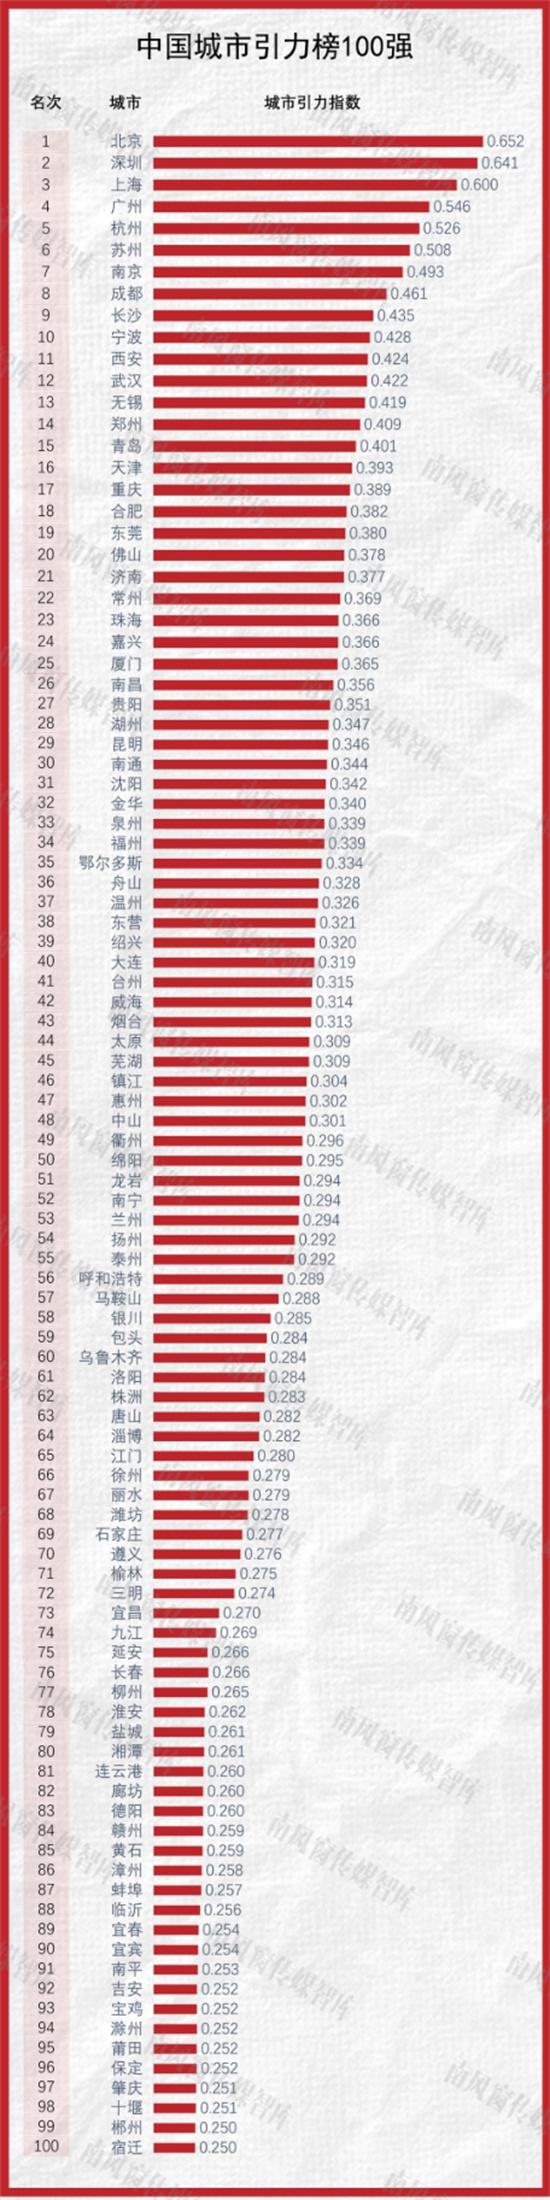 中国城市引力榜100强出炉 苏州位居榜单前六